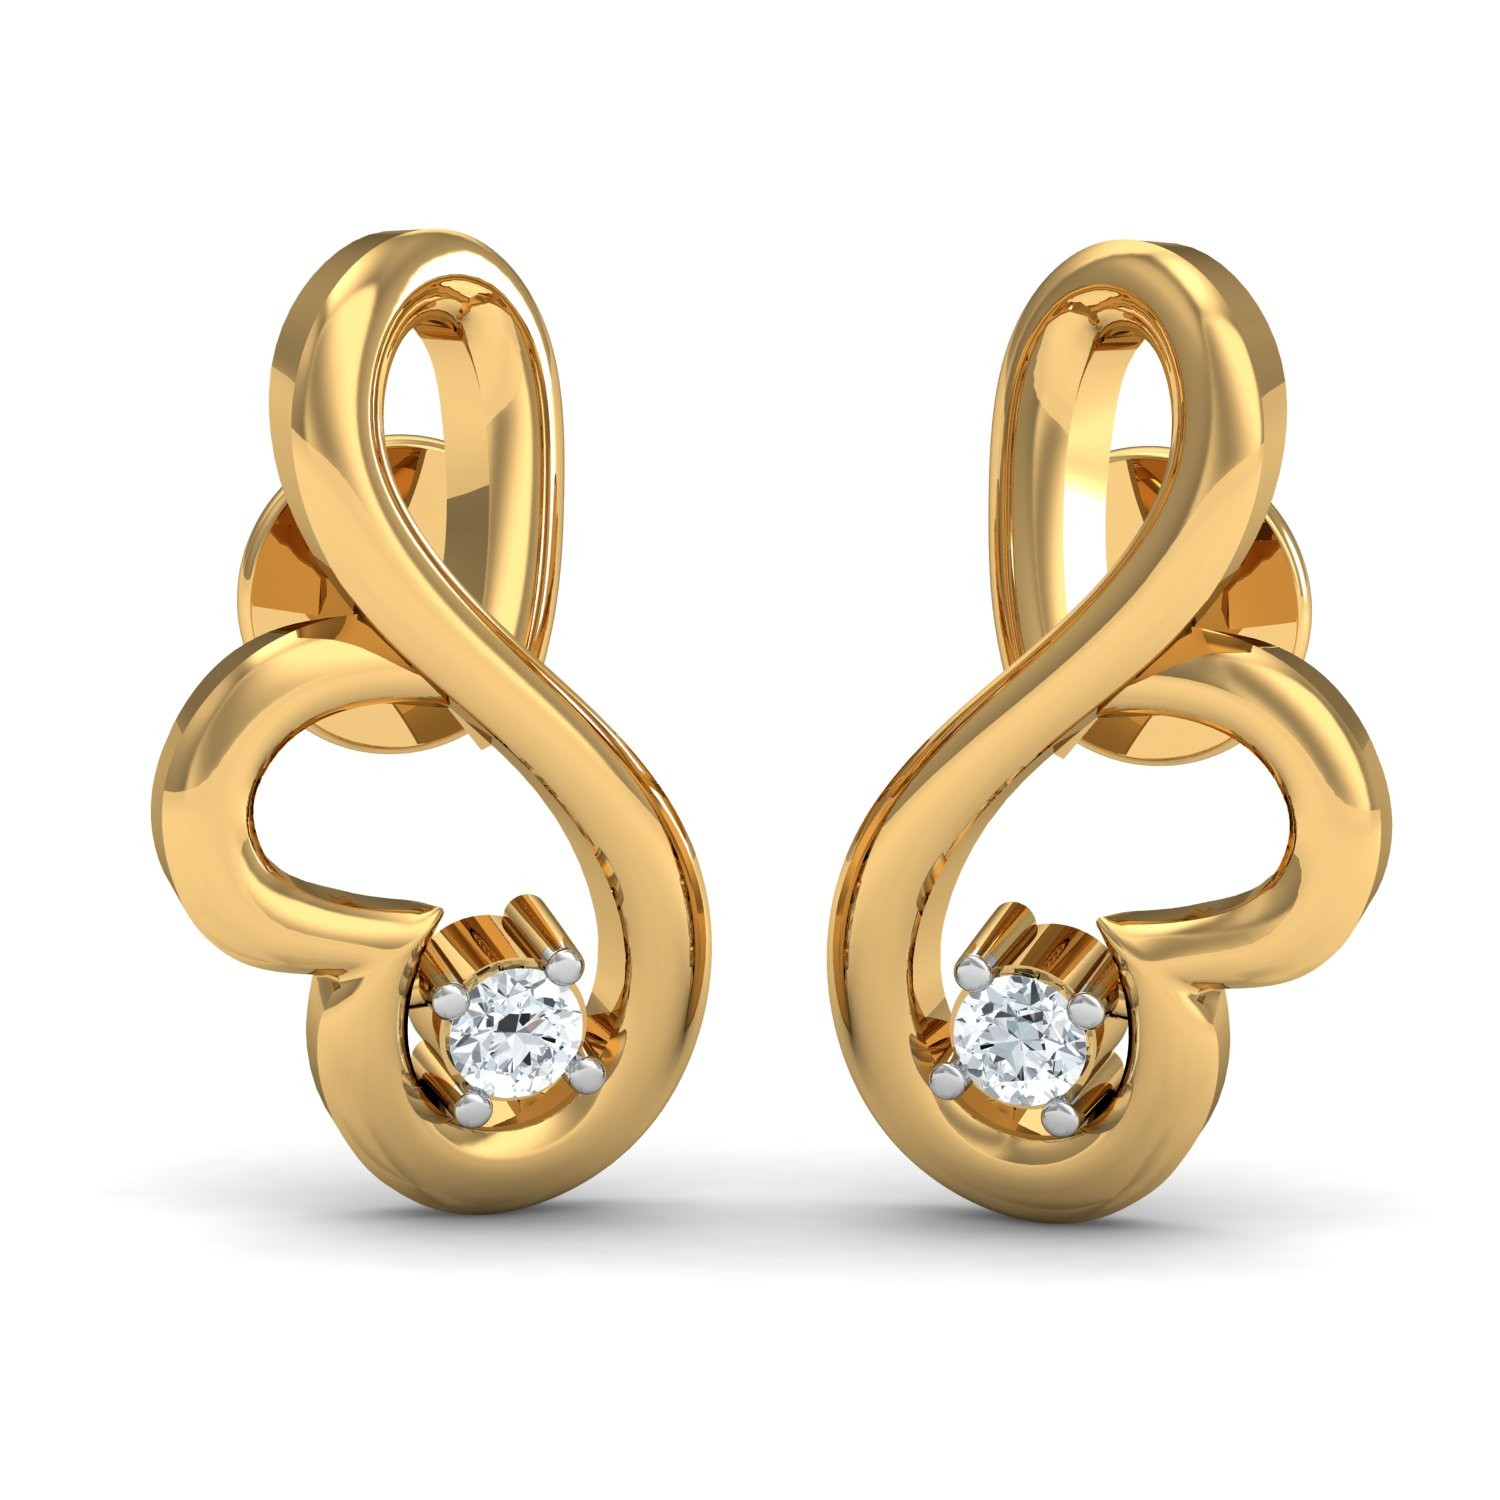 The Stella Diamond Earrings